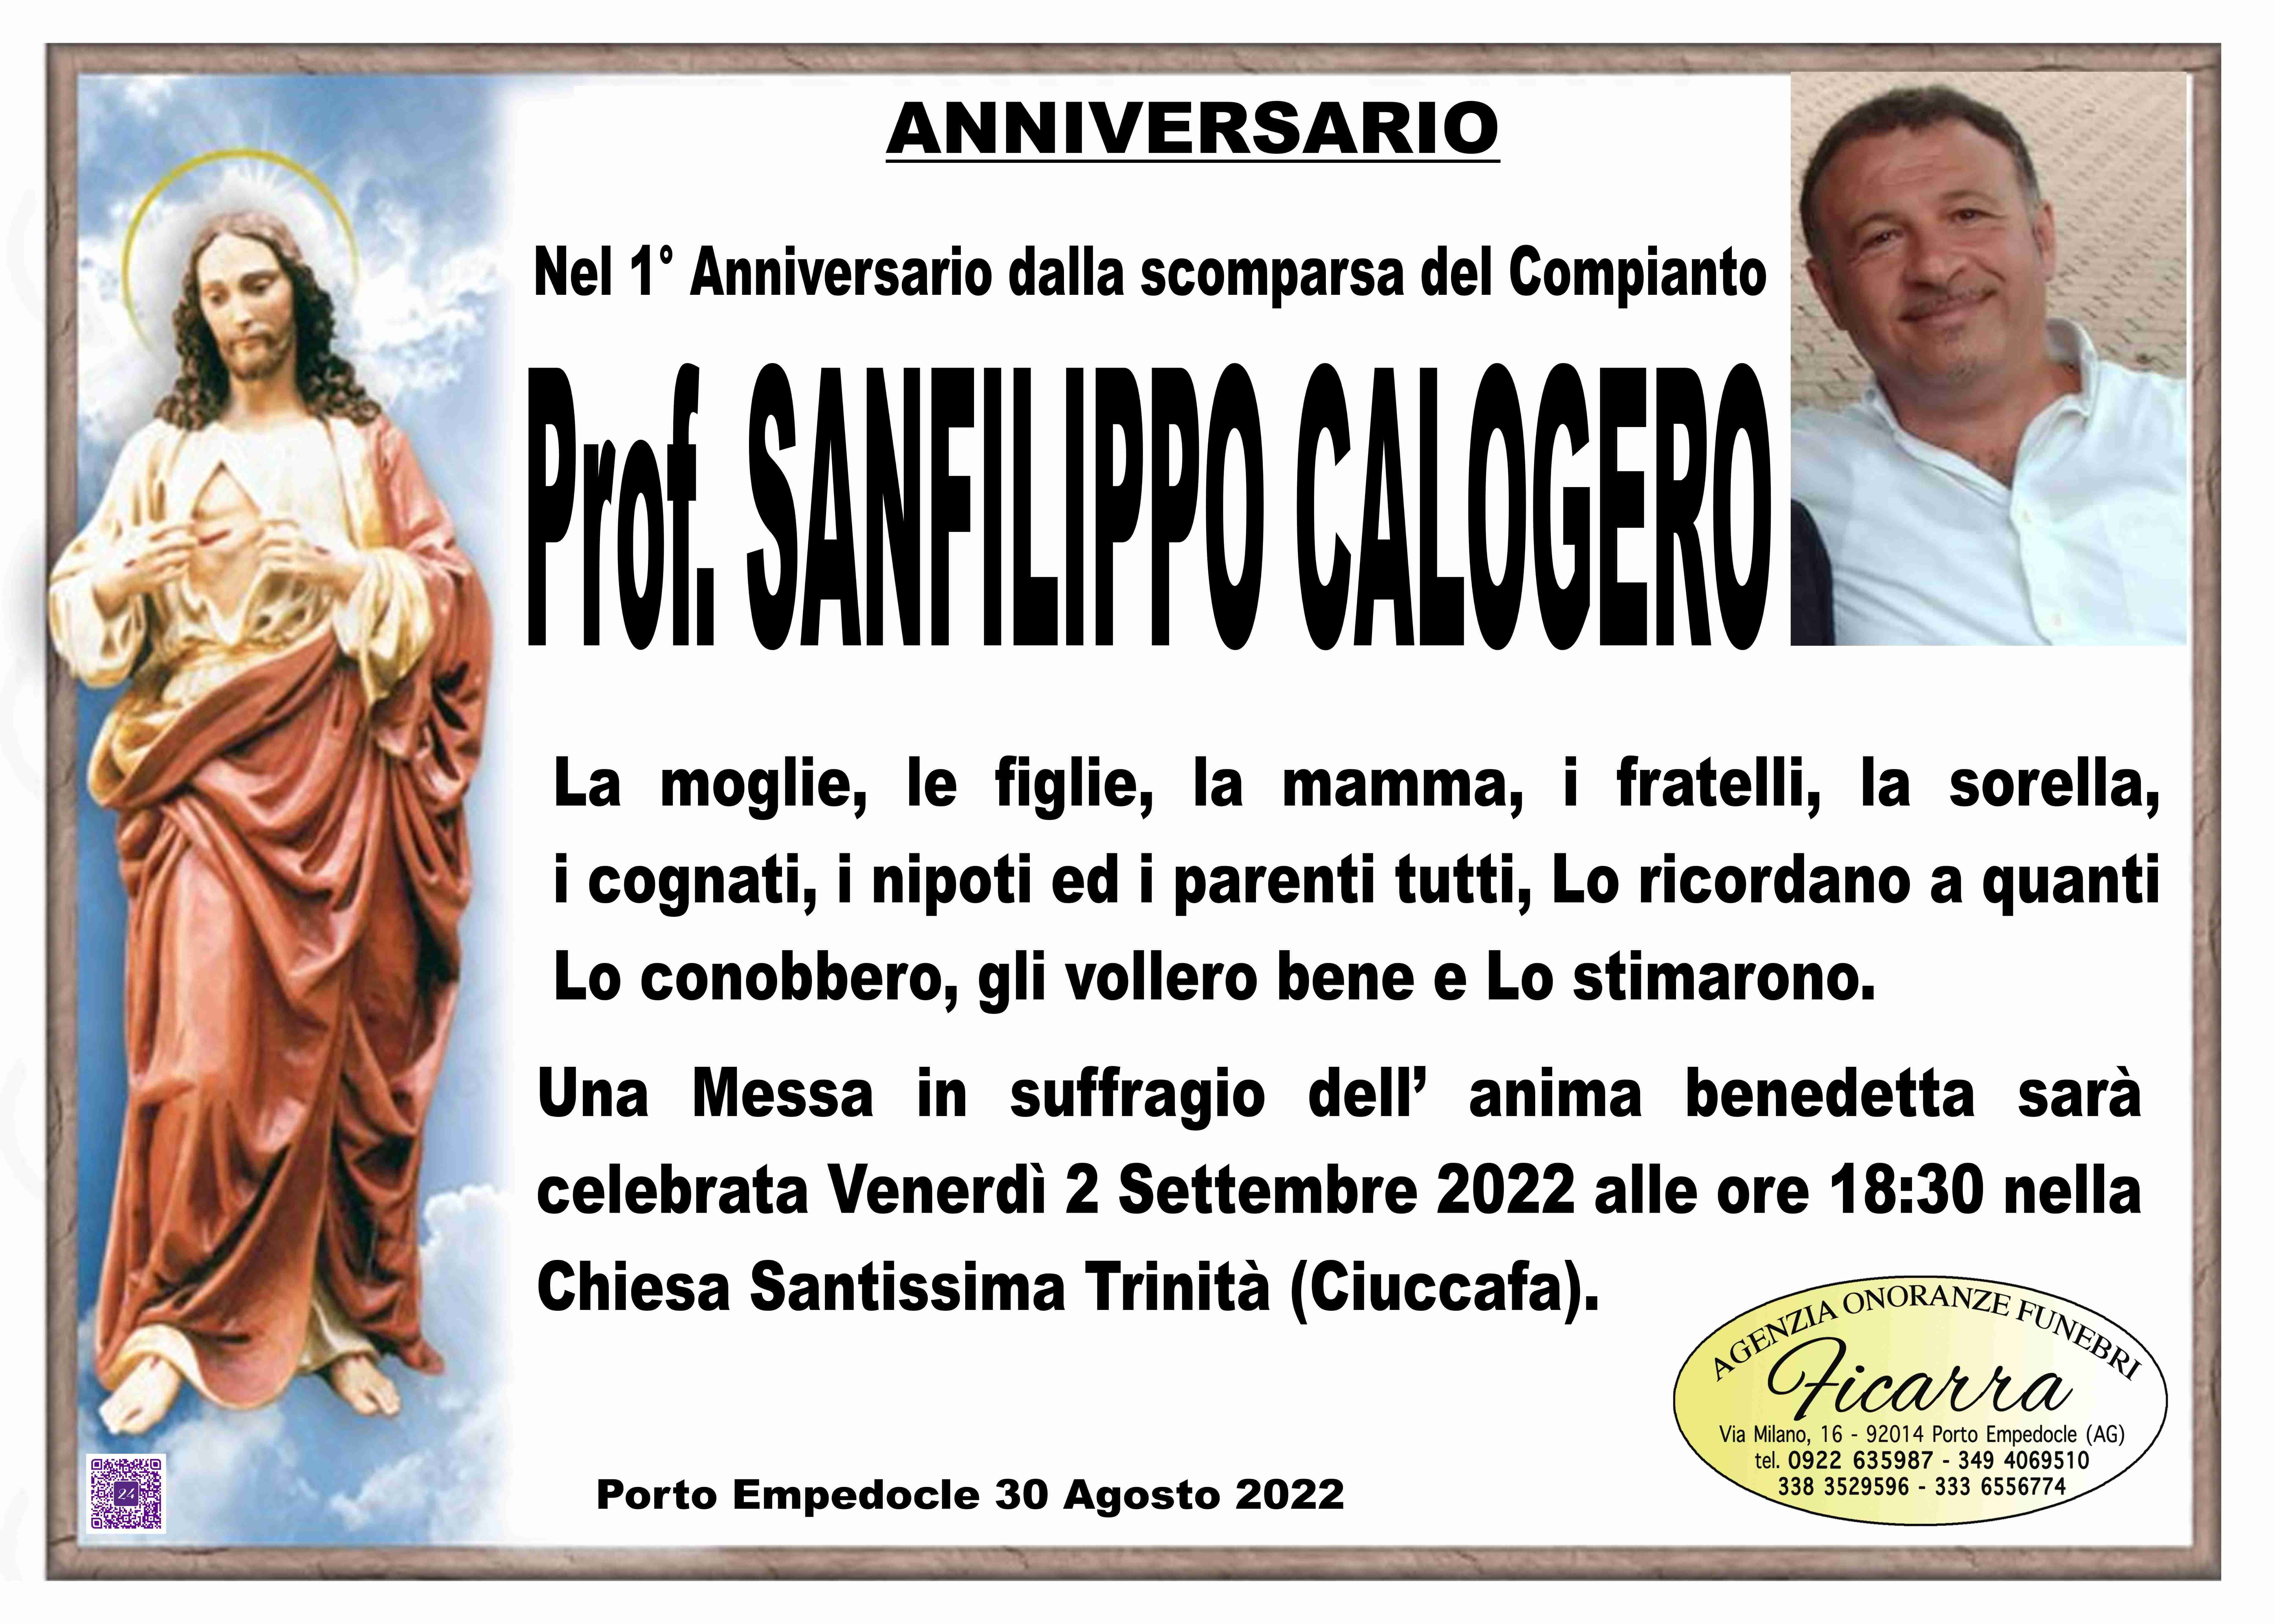 Calogero Sanfilippo